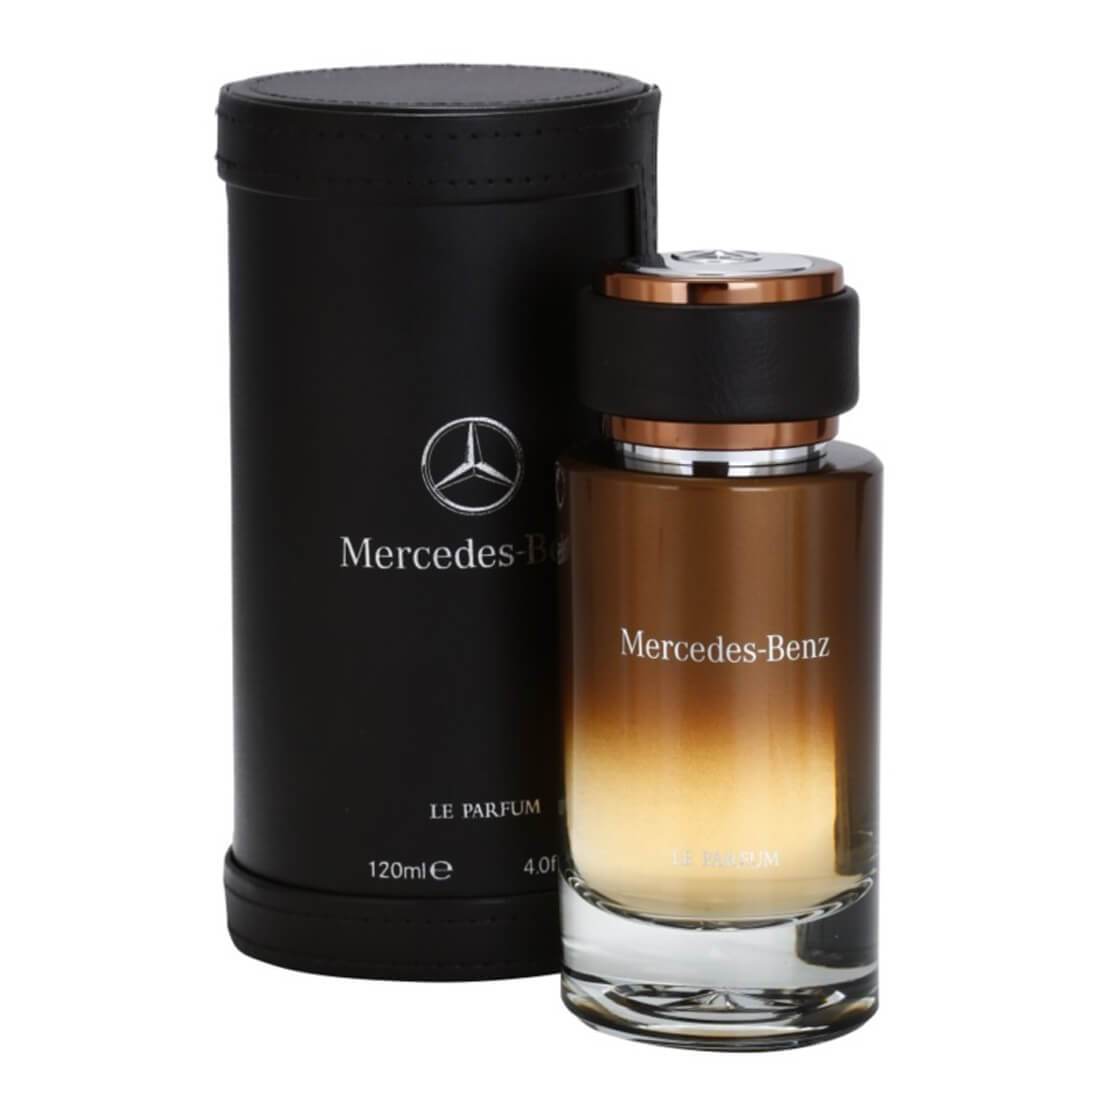 Mercedes Benz Le Parfum 120ml EDP Men